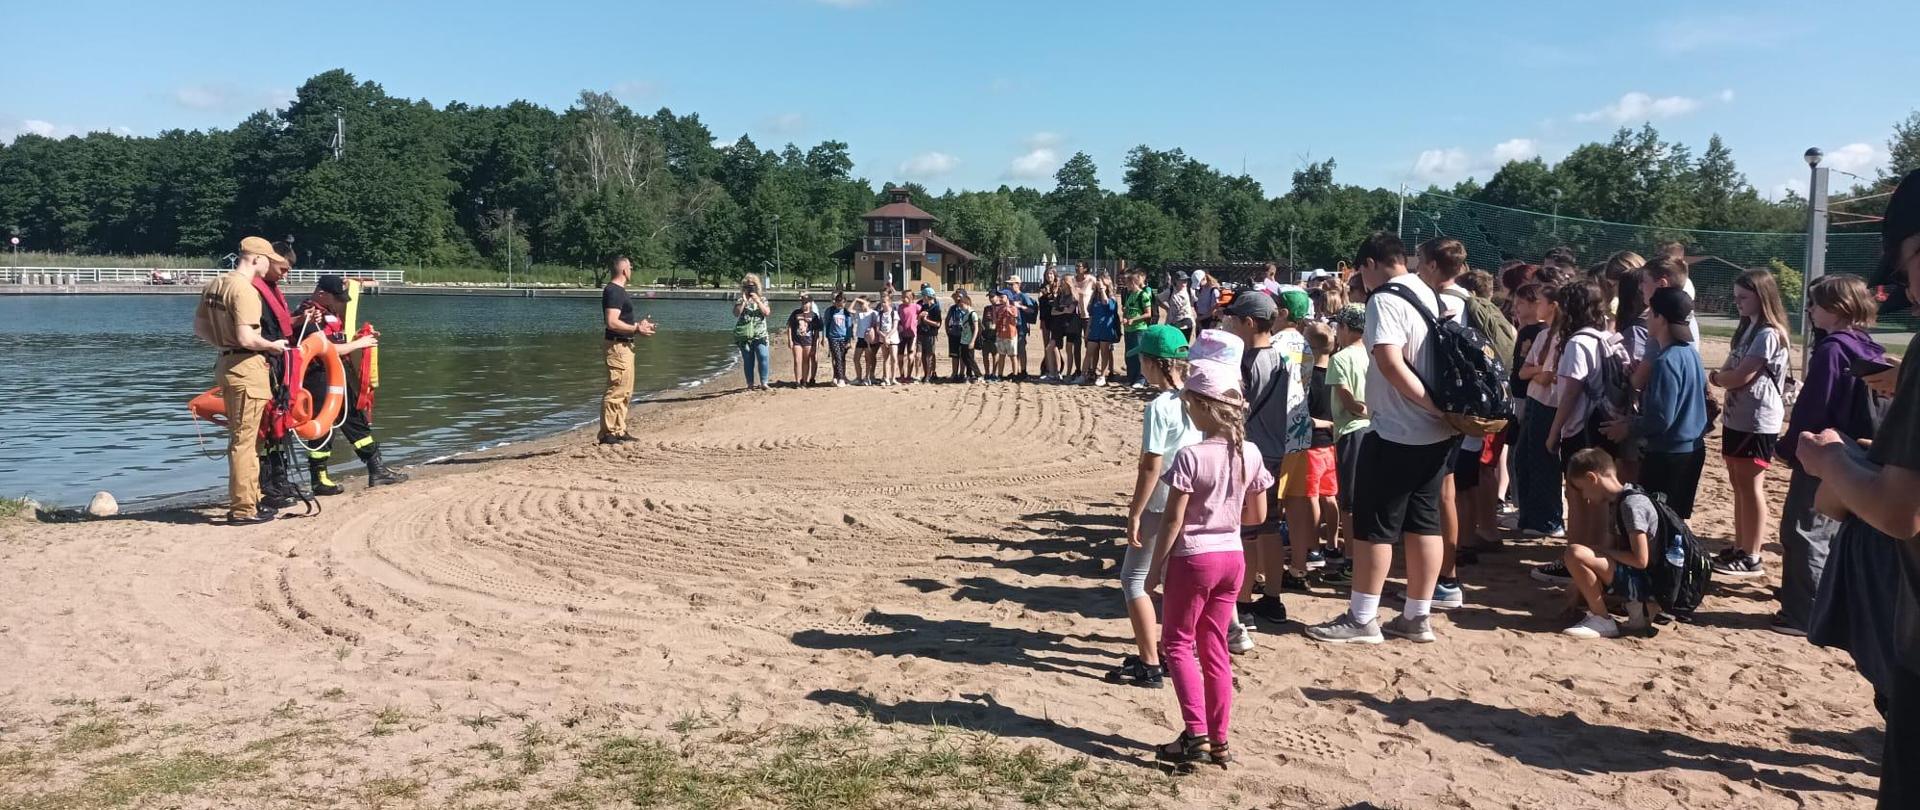 Strażacy stoją przed dziećmi na plaży i omawiają zasady postępowania nad wodą.